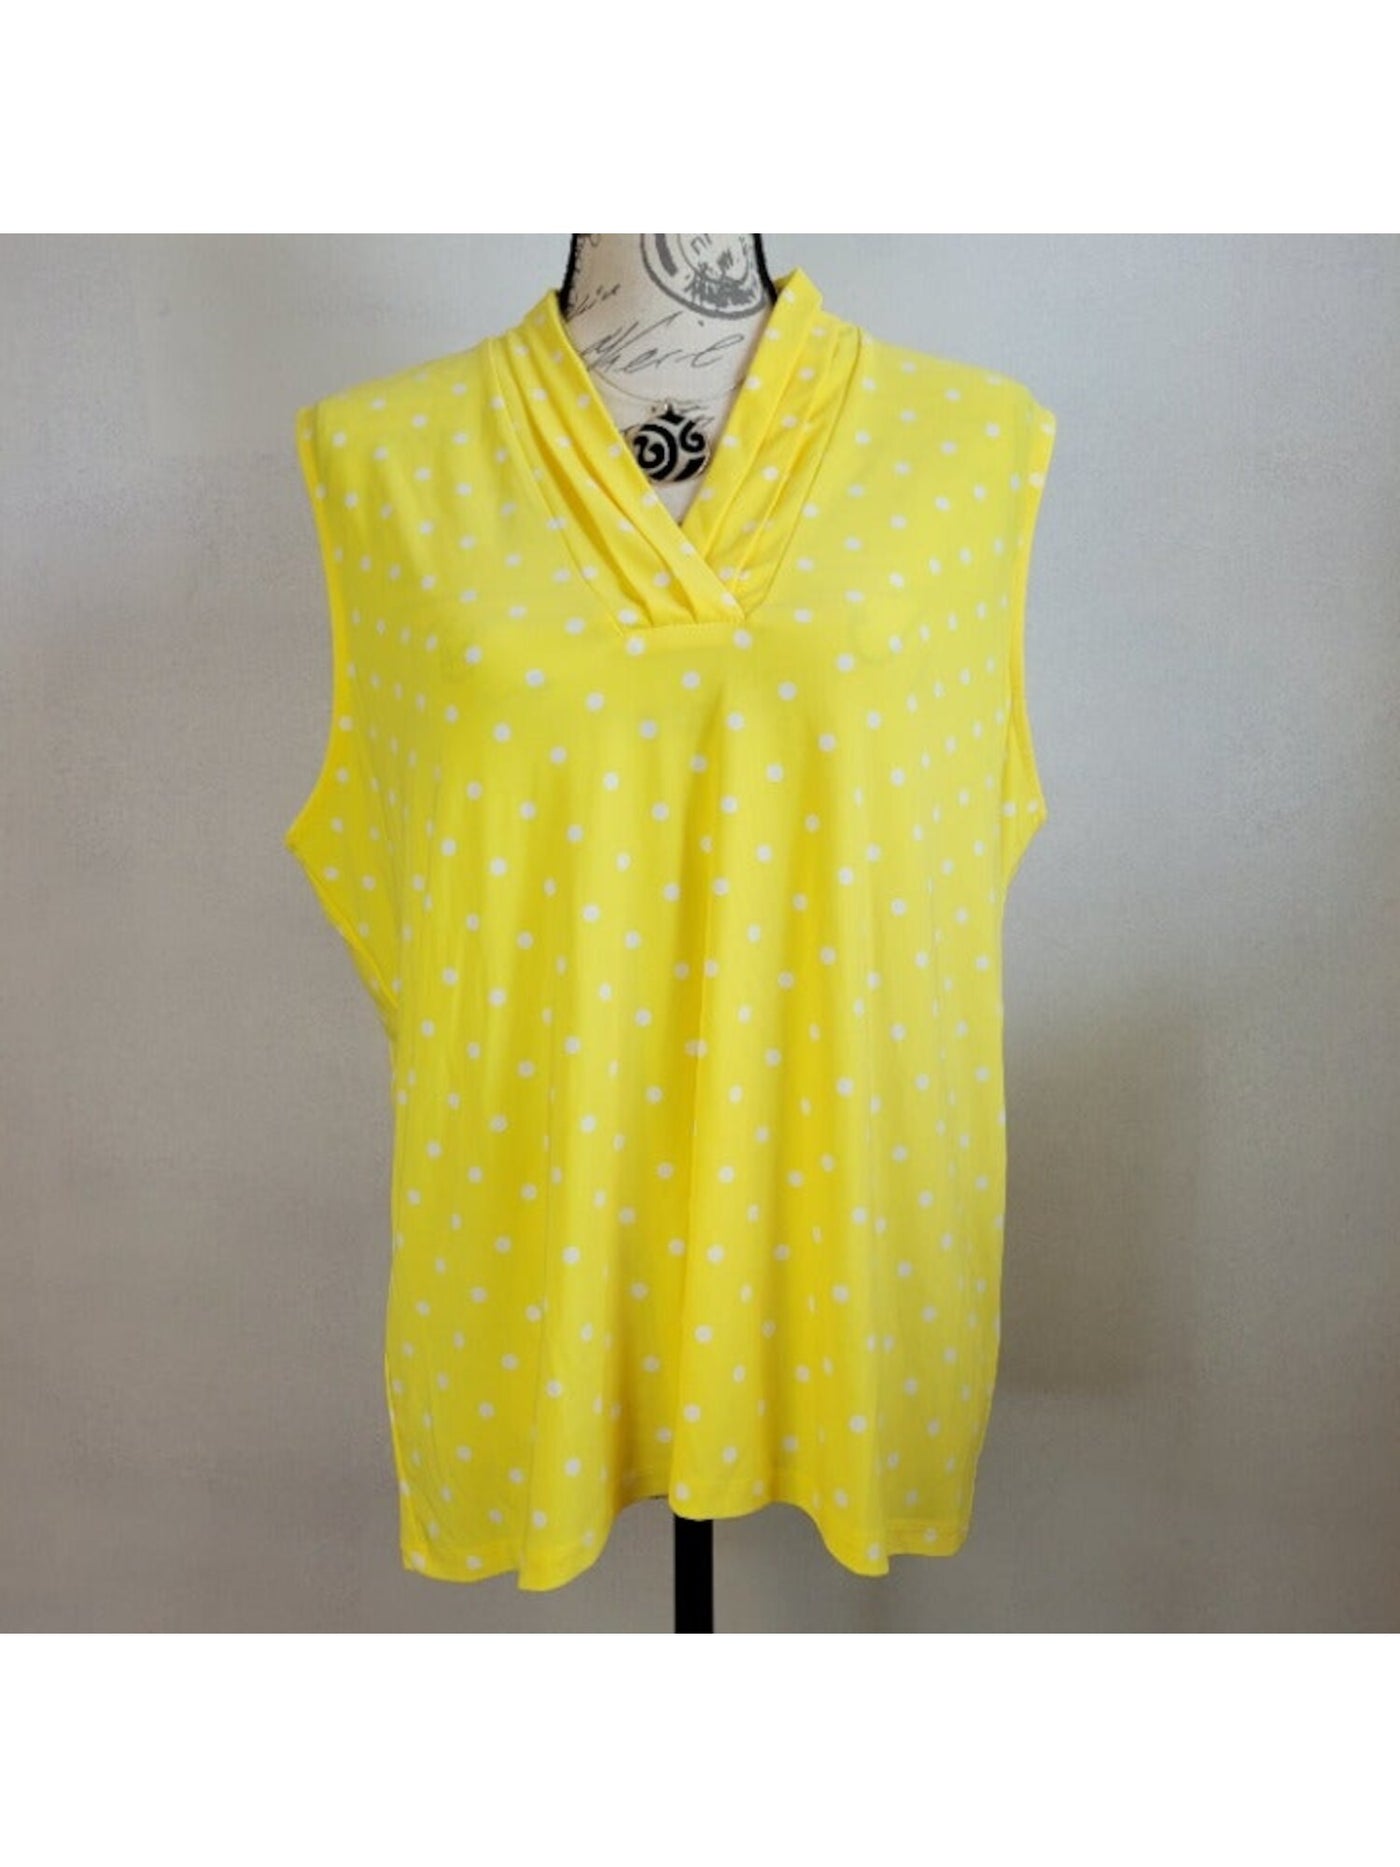 ANNE KLEIN Womens Yellow Stretch Polka Dot Surplice Neckline Wear To Work Blouse M